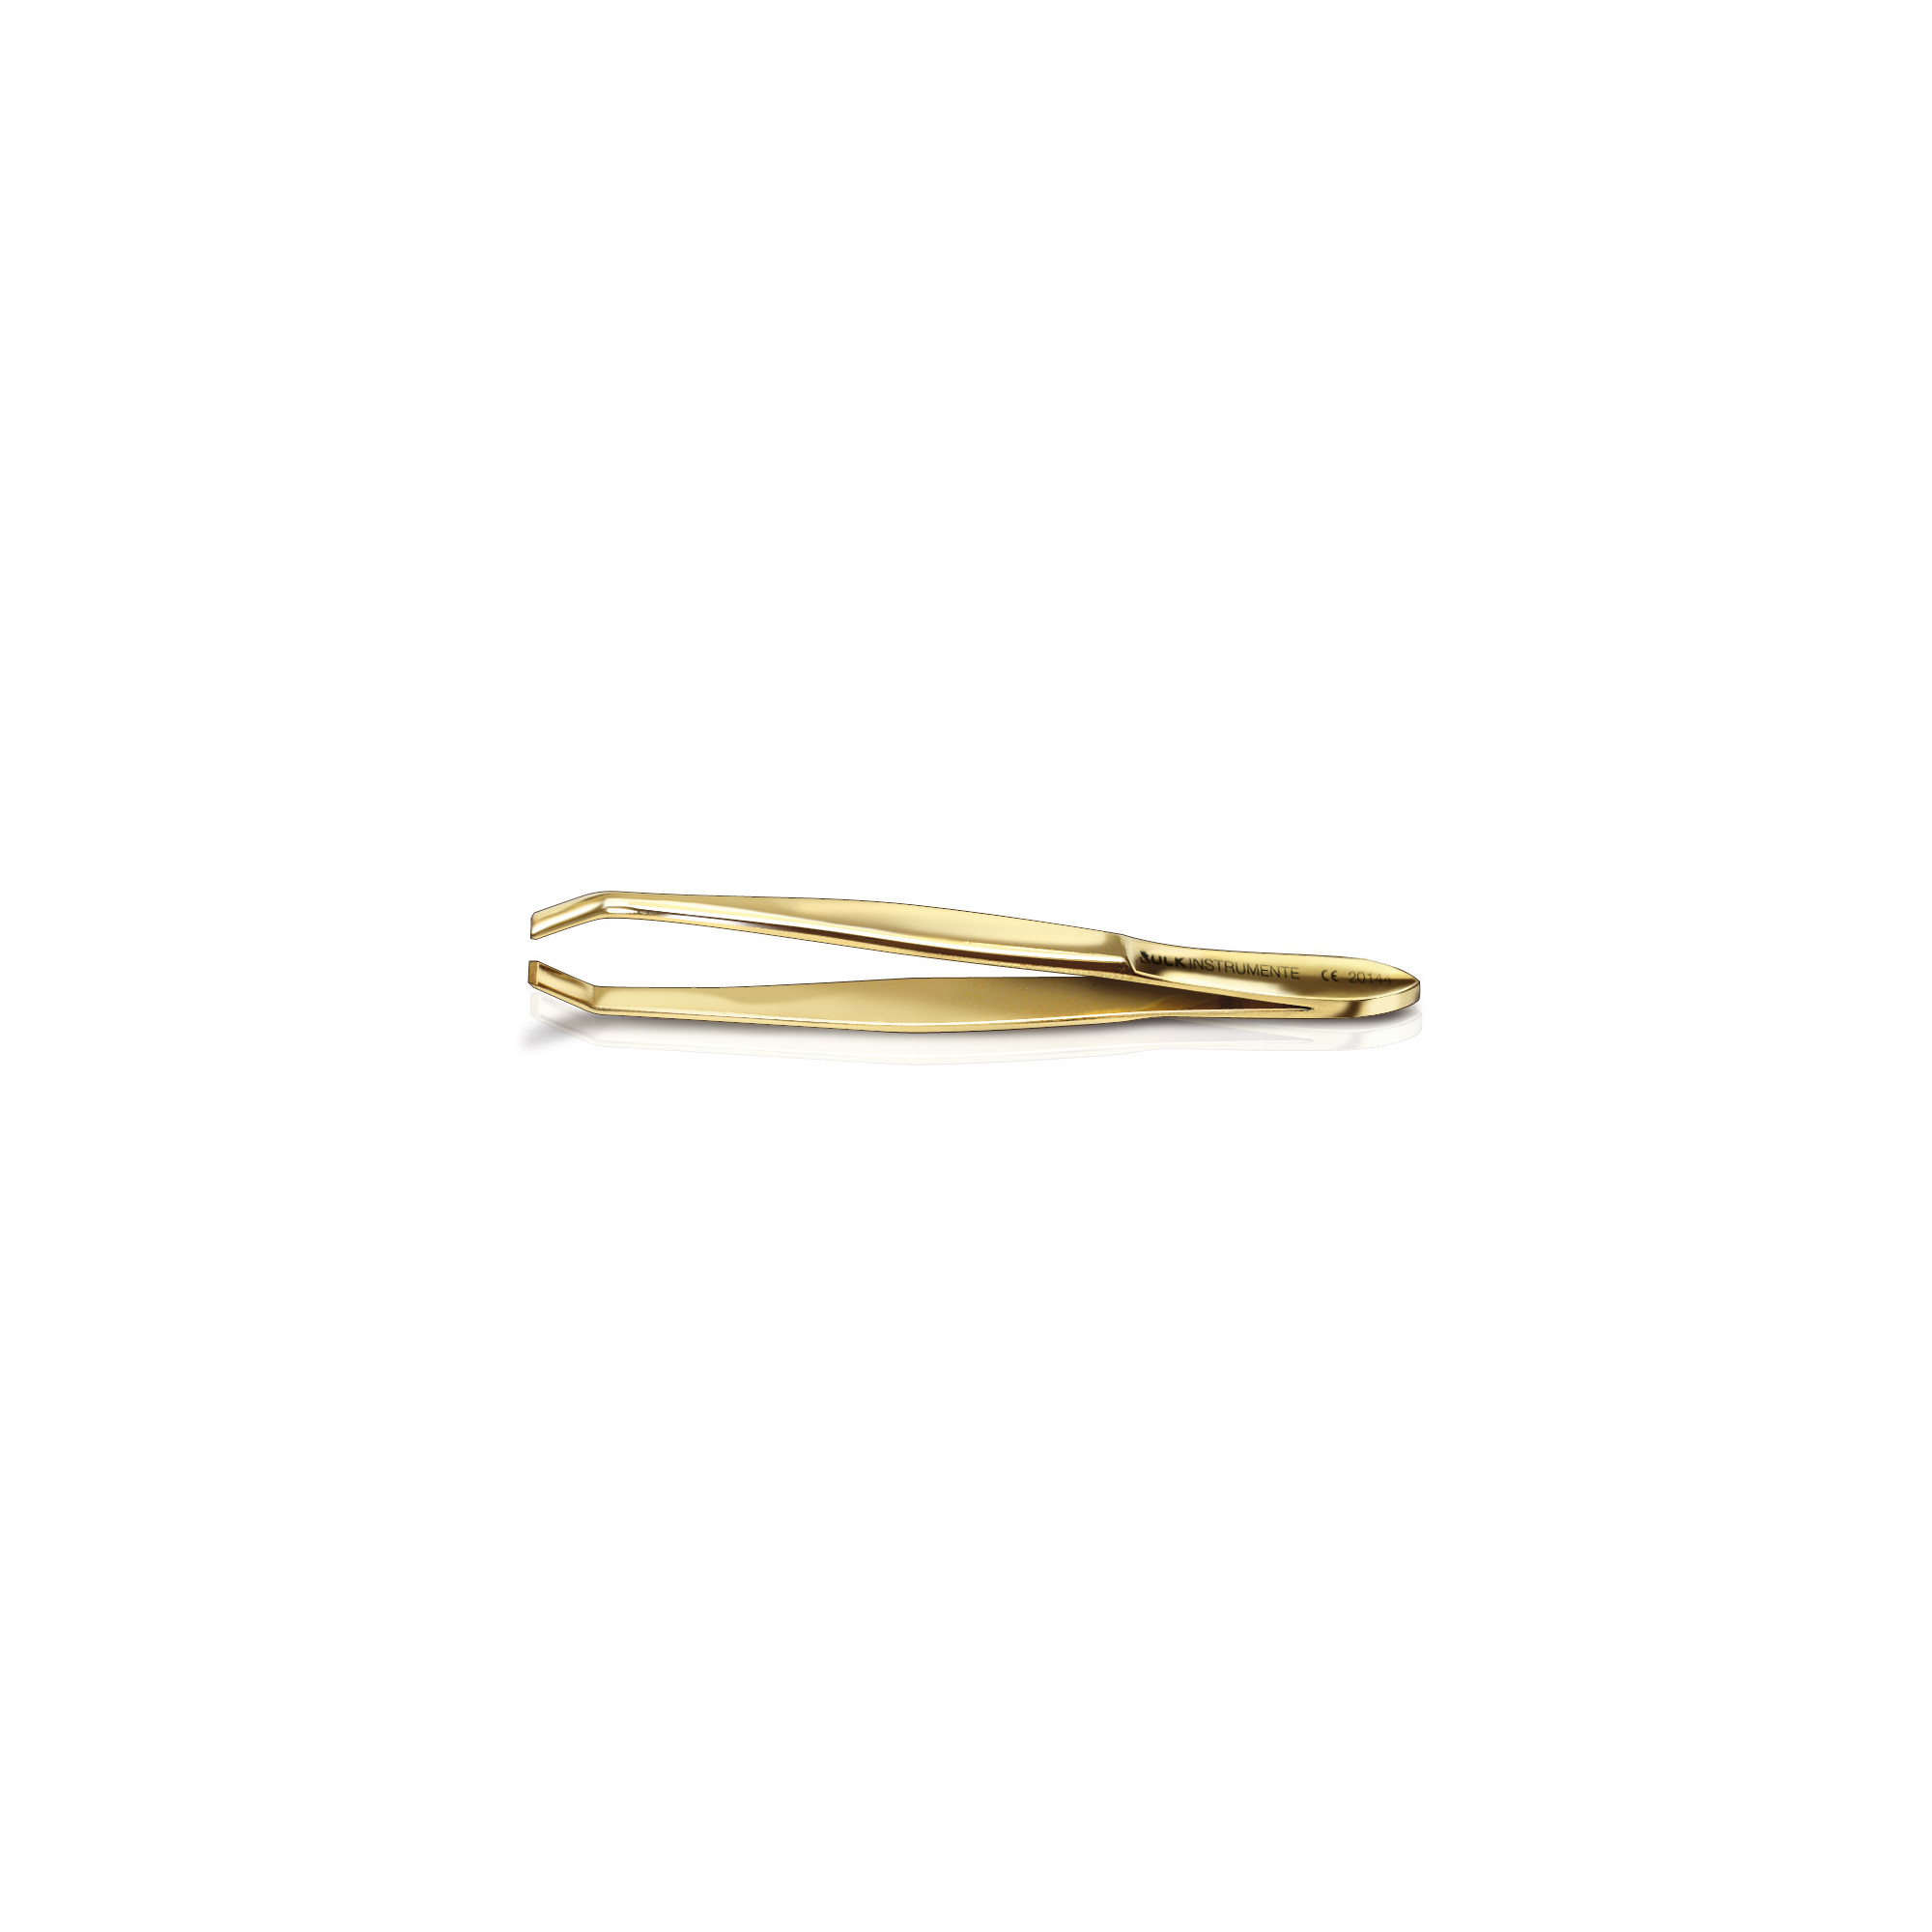 Pince à épiler dorée - Longueur : 9,5 cm - Tranchant : 3 mm - Ruck